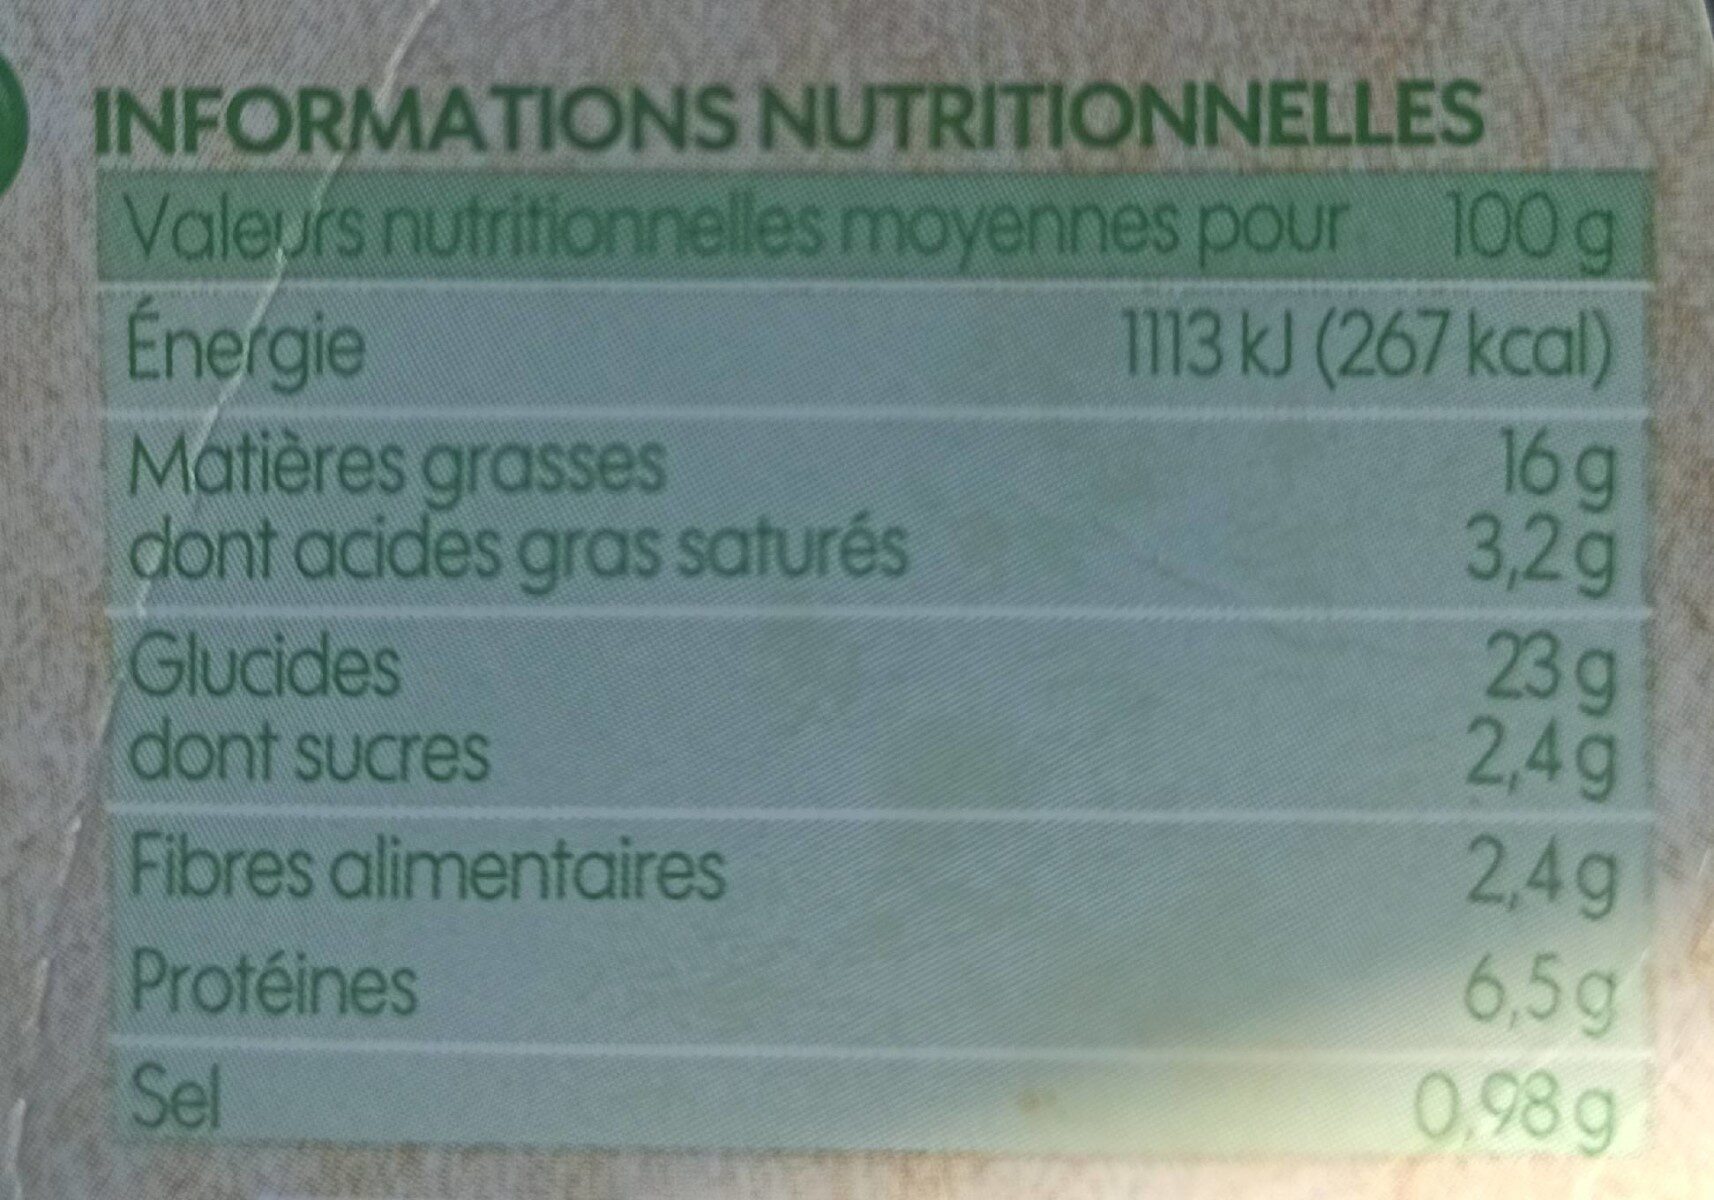 Wrap chèvre tomates x 2 - Nutrition facts - fr